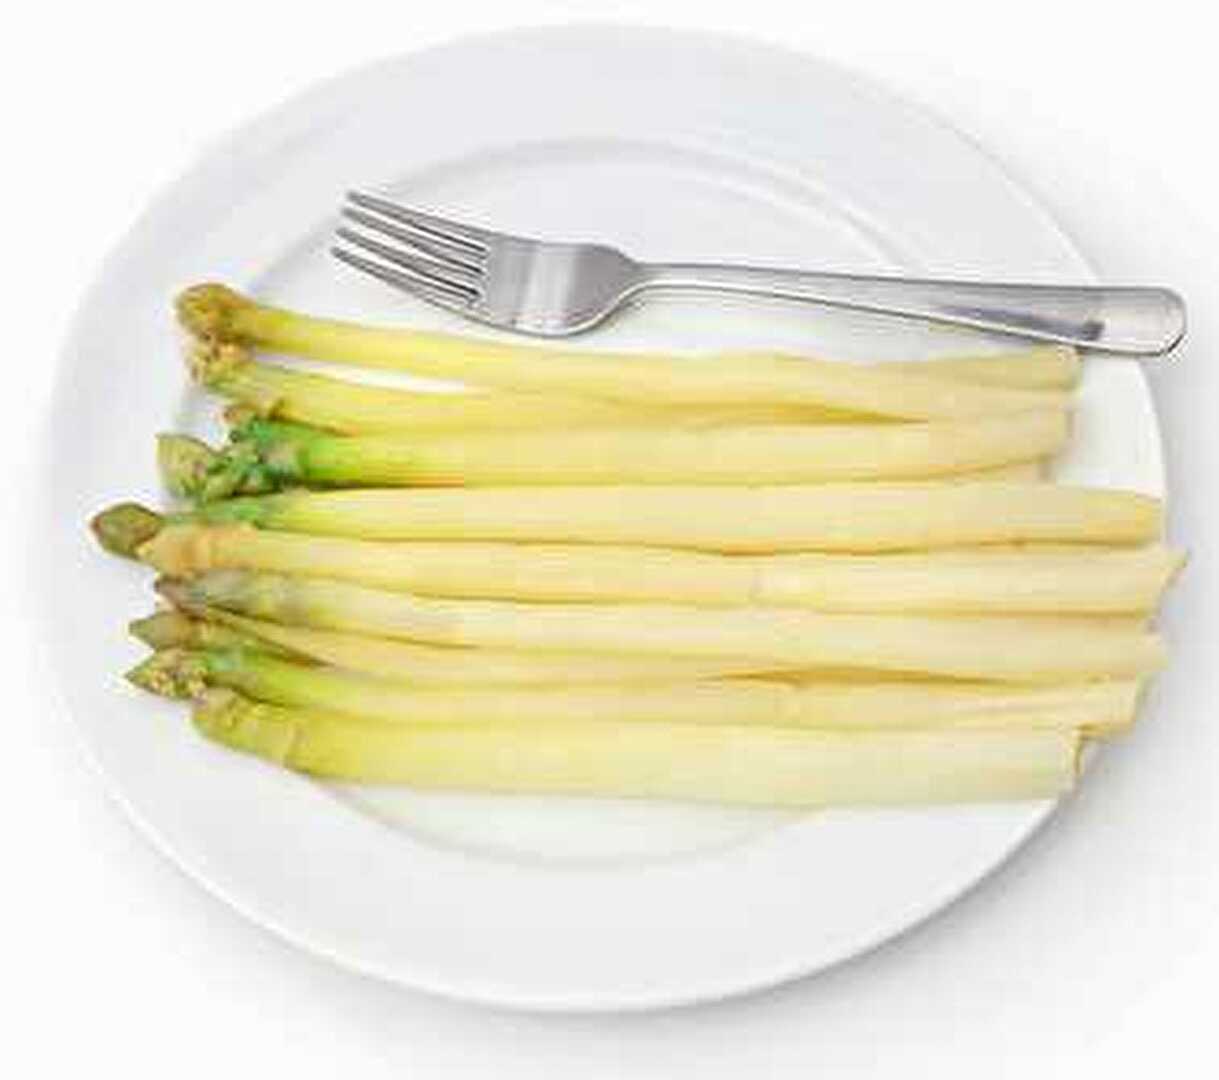 Des asperges blanches parfaites en 8 minutes grâce au Cookeo